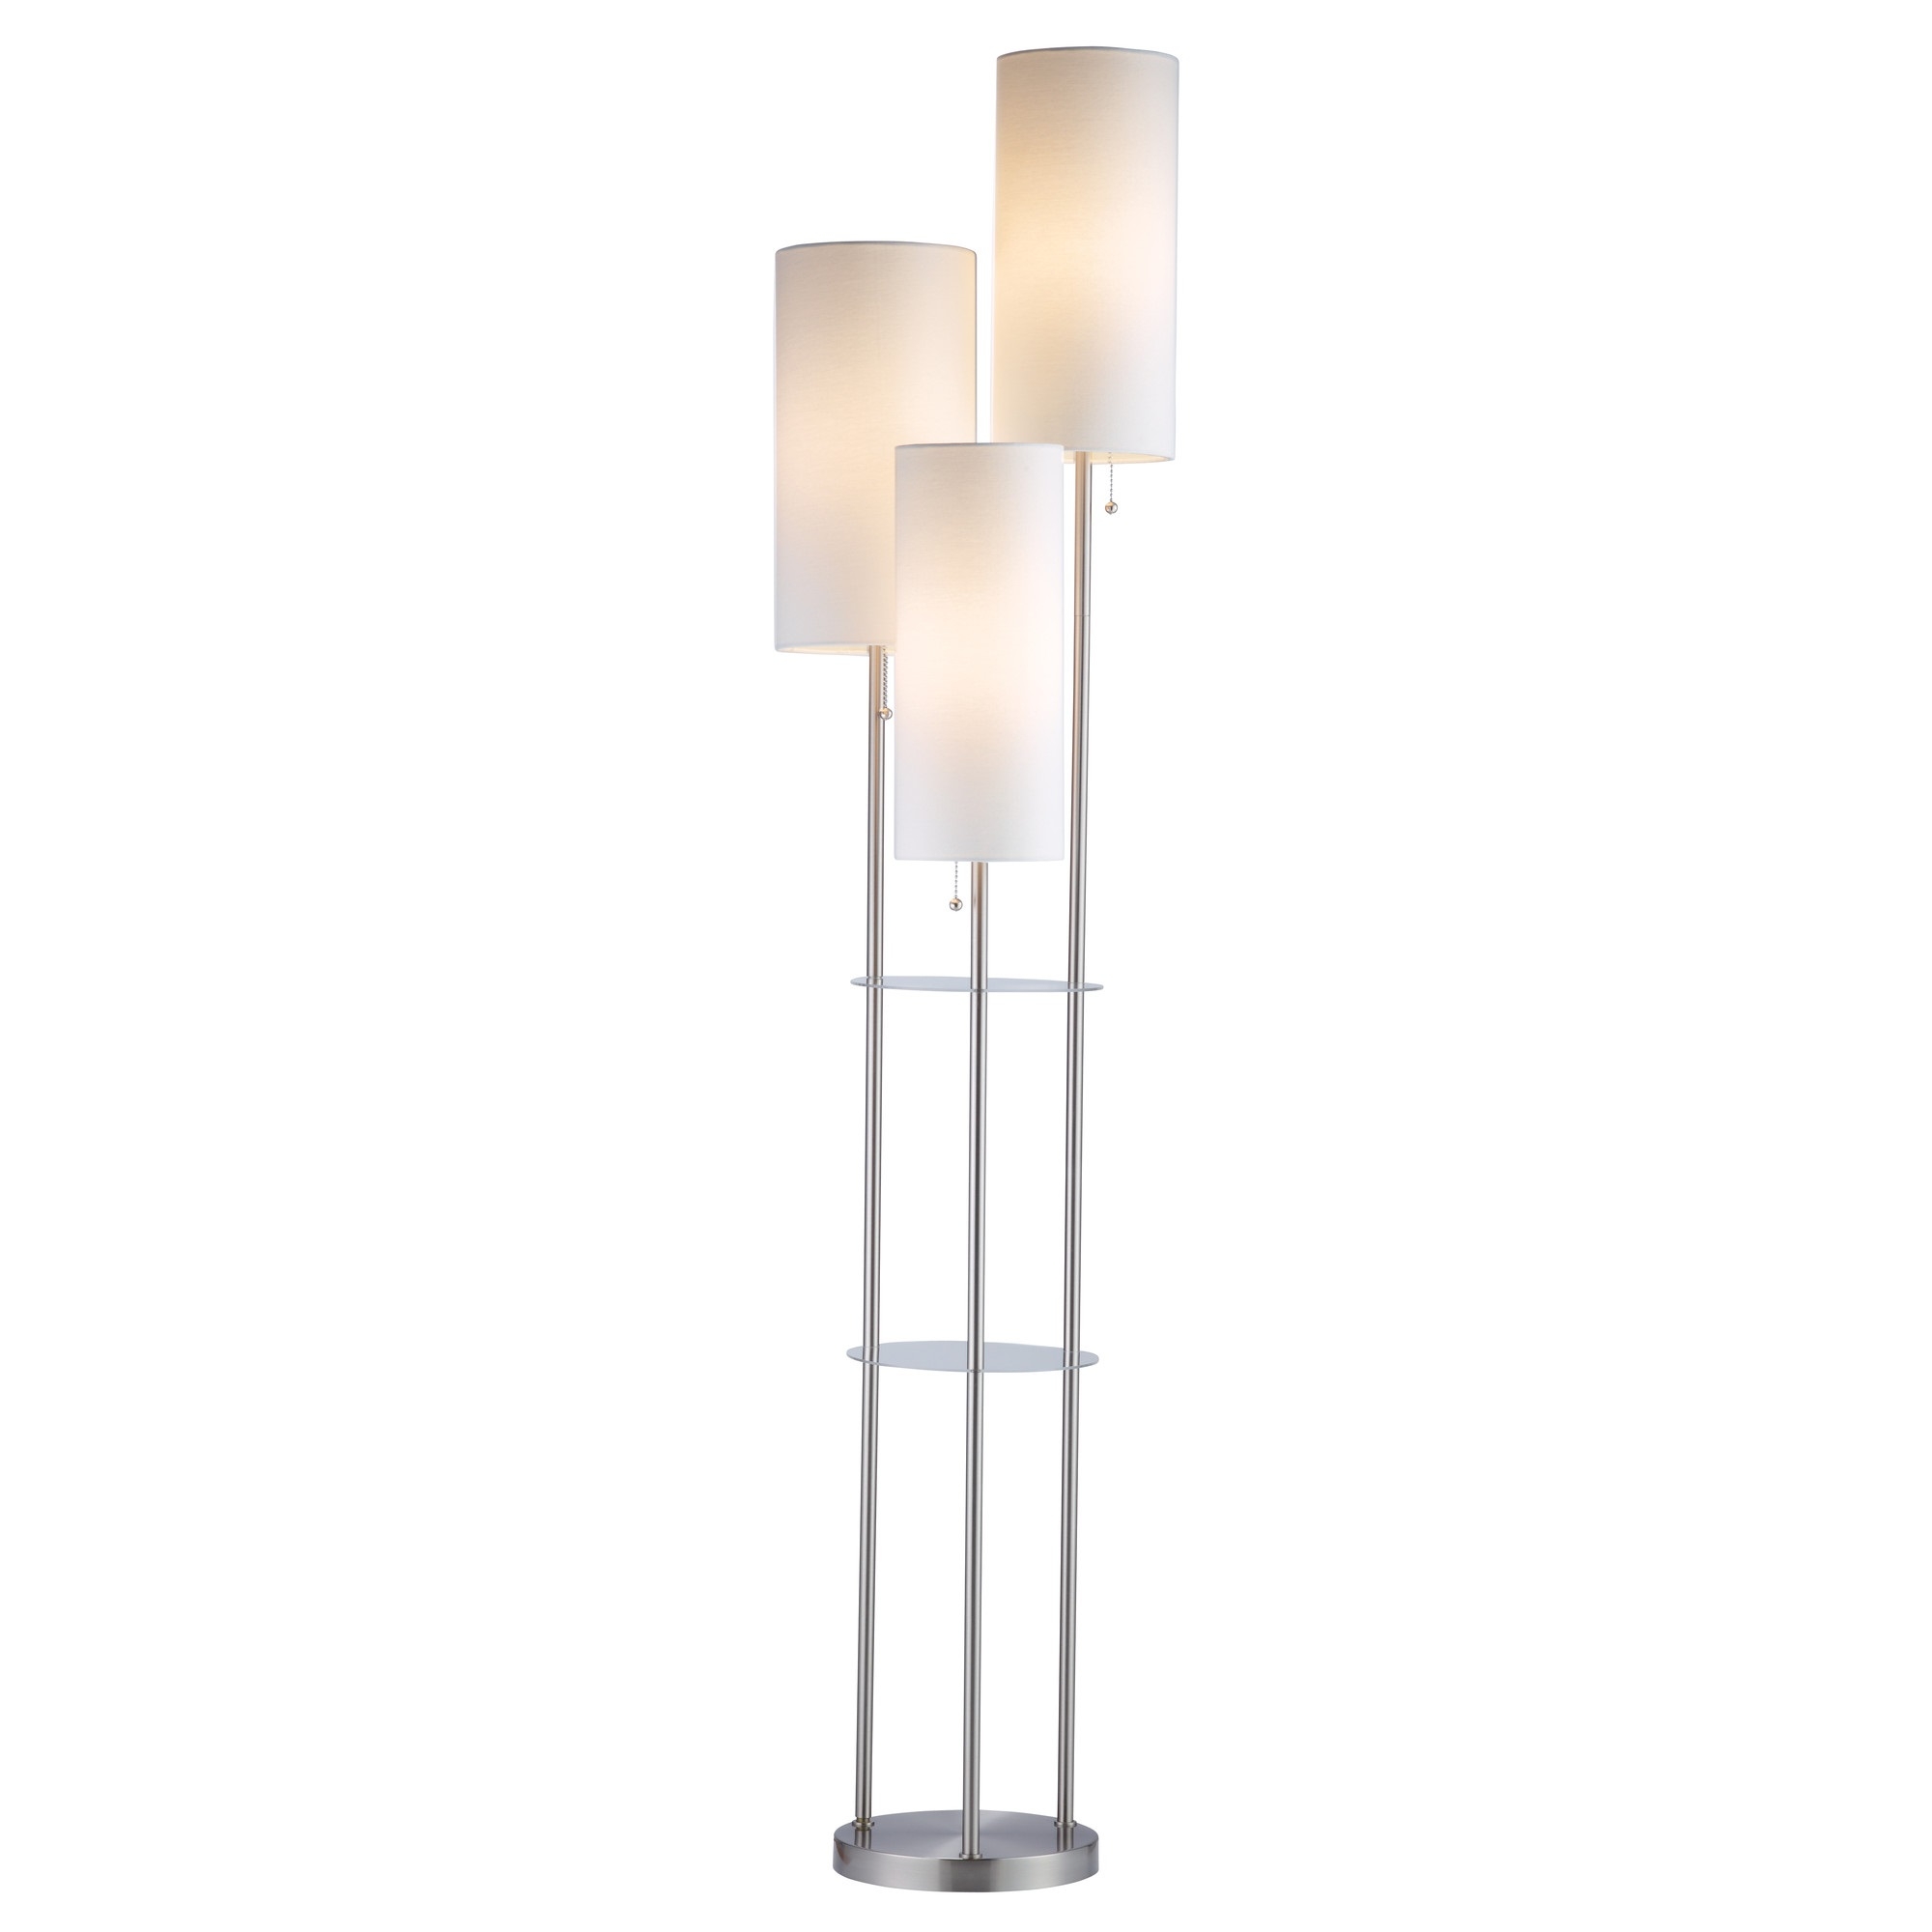 Adesso Trio Floor Lamp 4305-22 l Brilliant Source Lighting